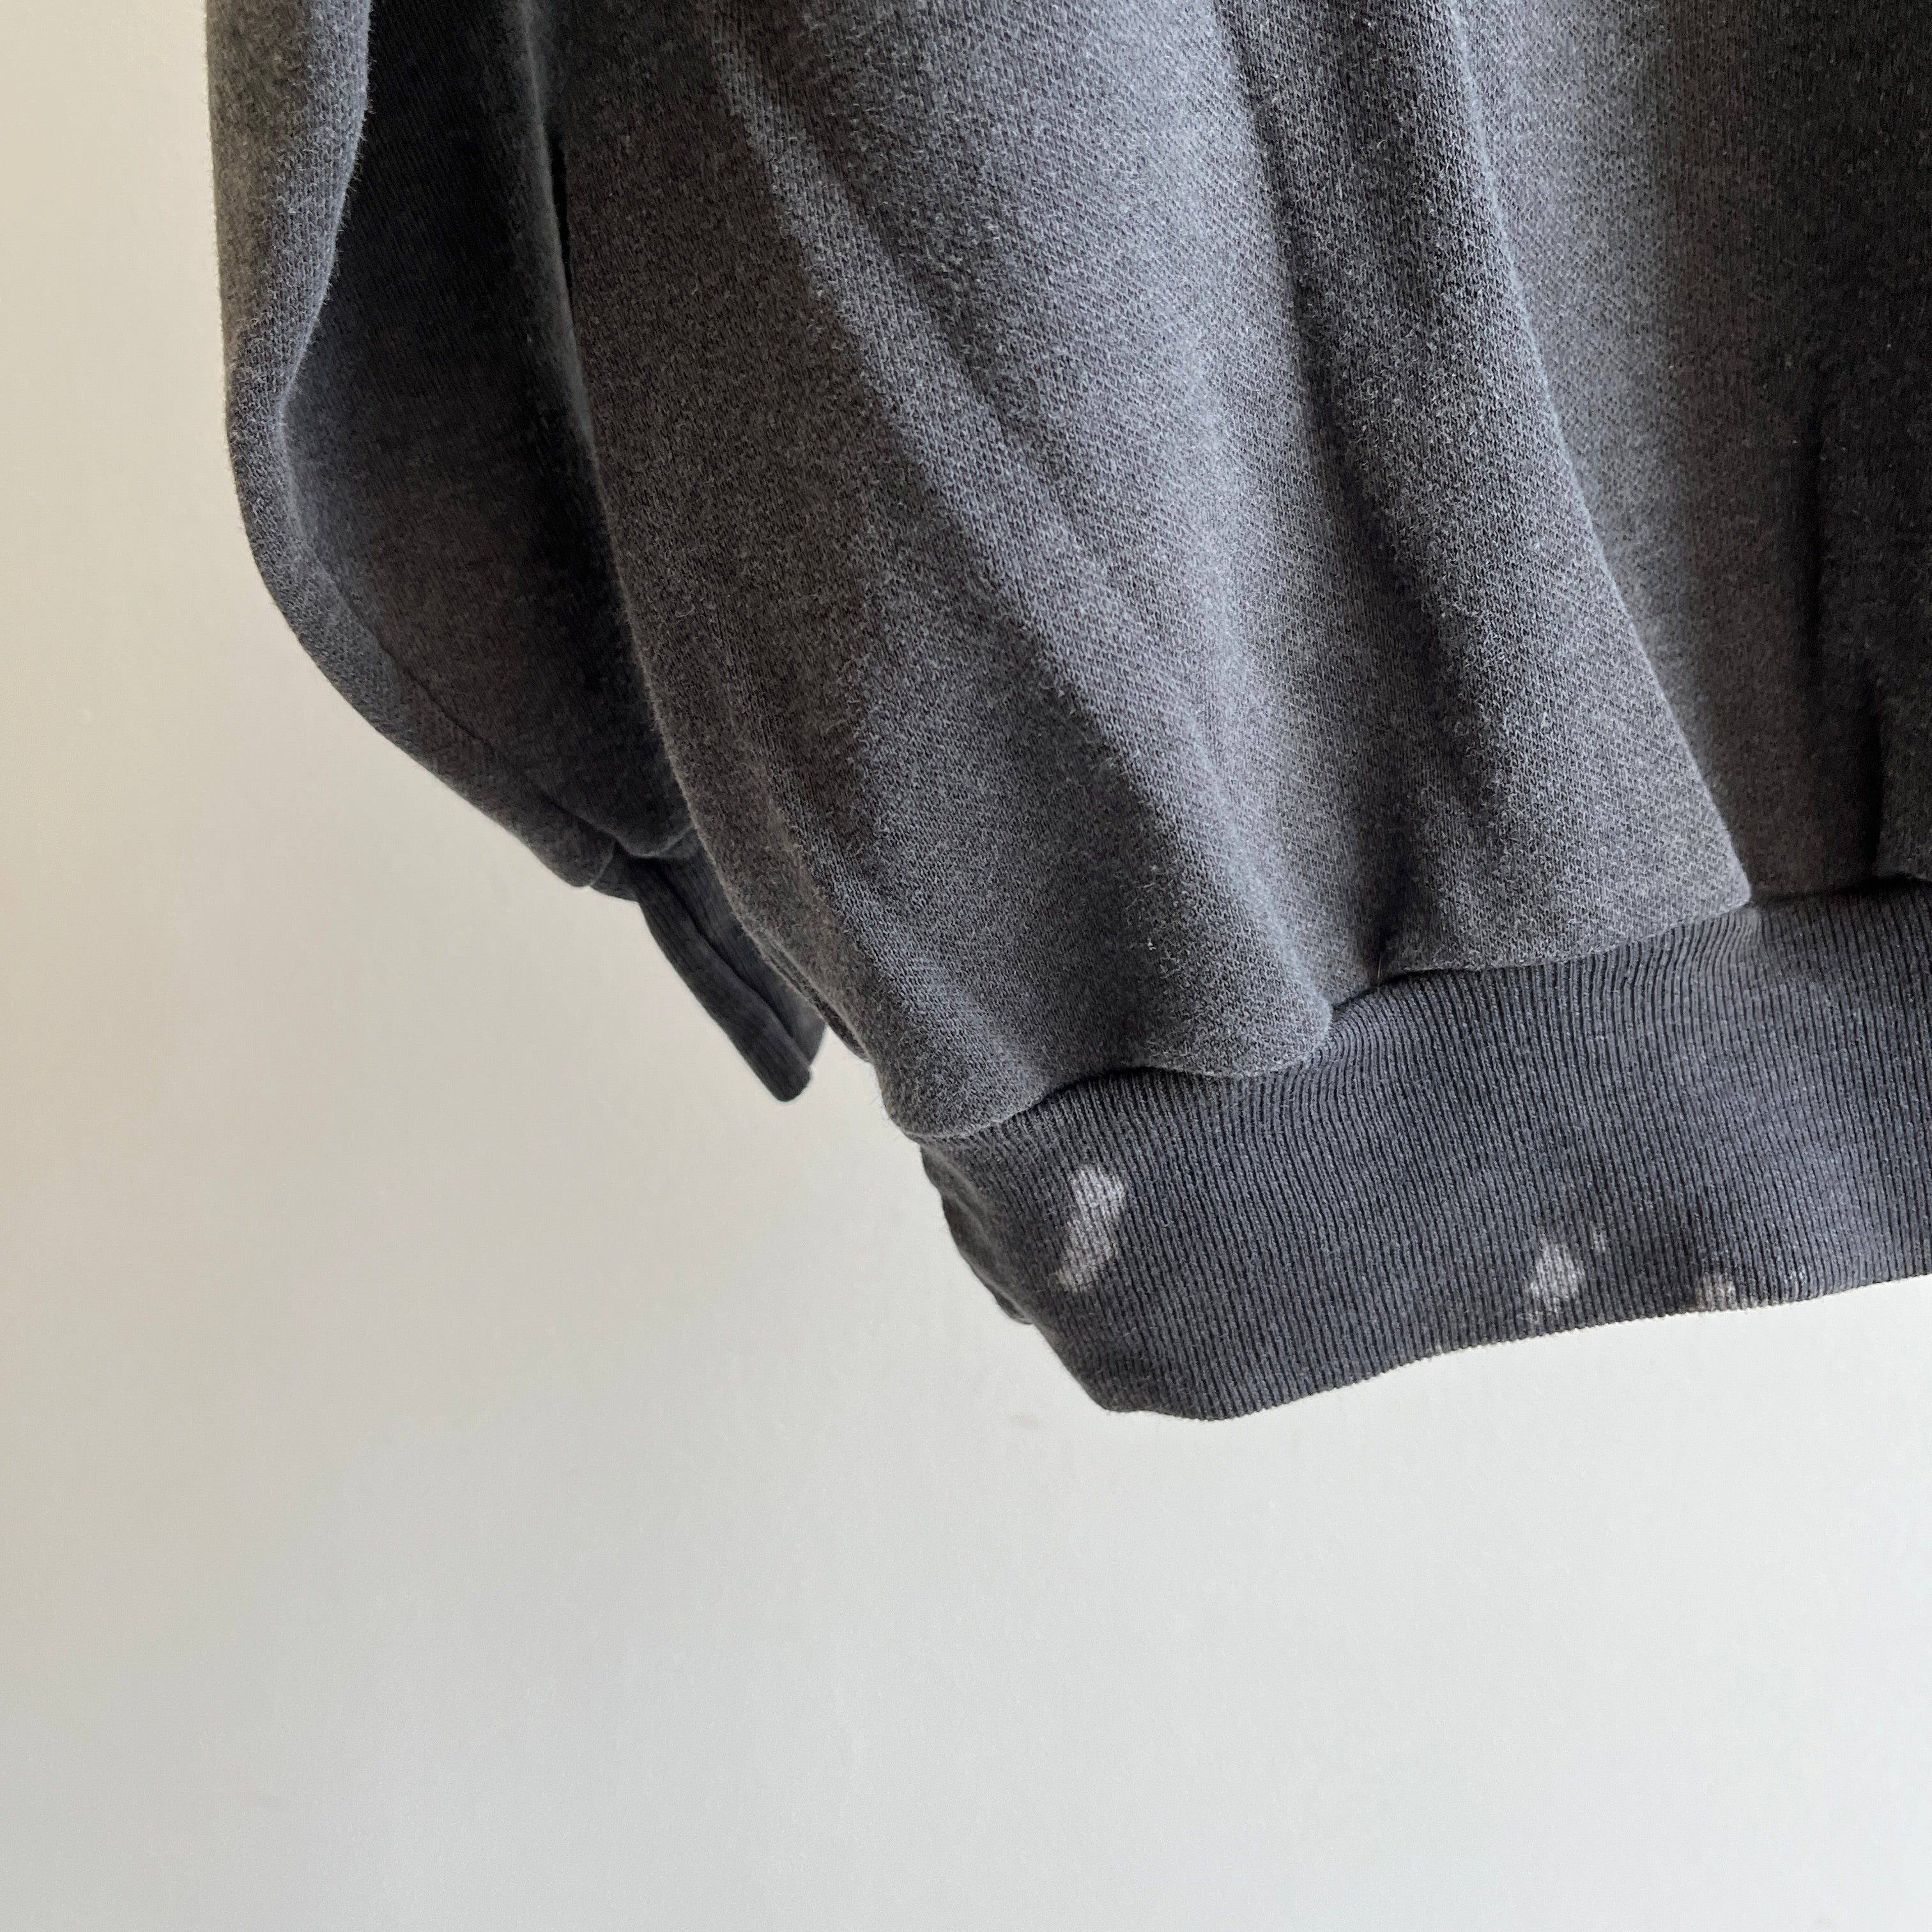 Sweat-shirt à manches longues gris foncé/noir super léger délavé et teinté à l'eau de Javel des années 1990